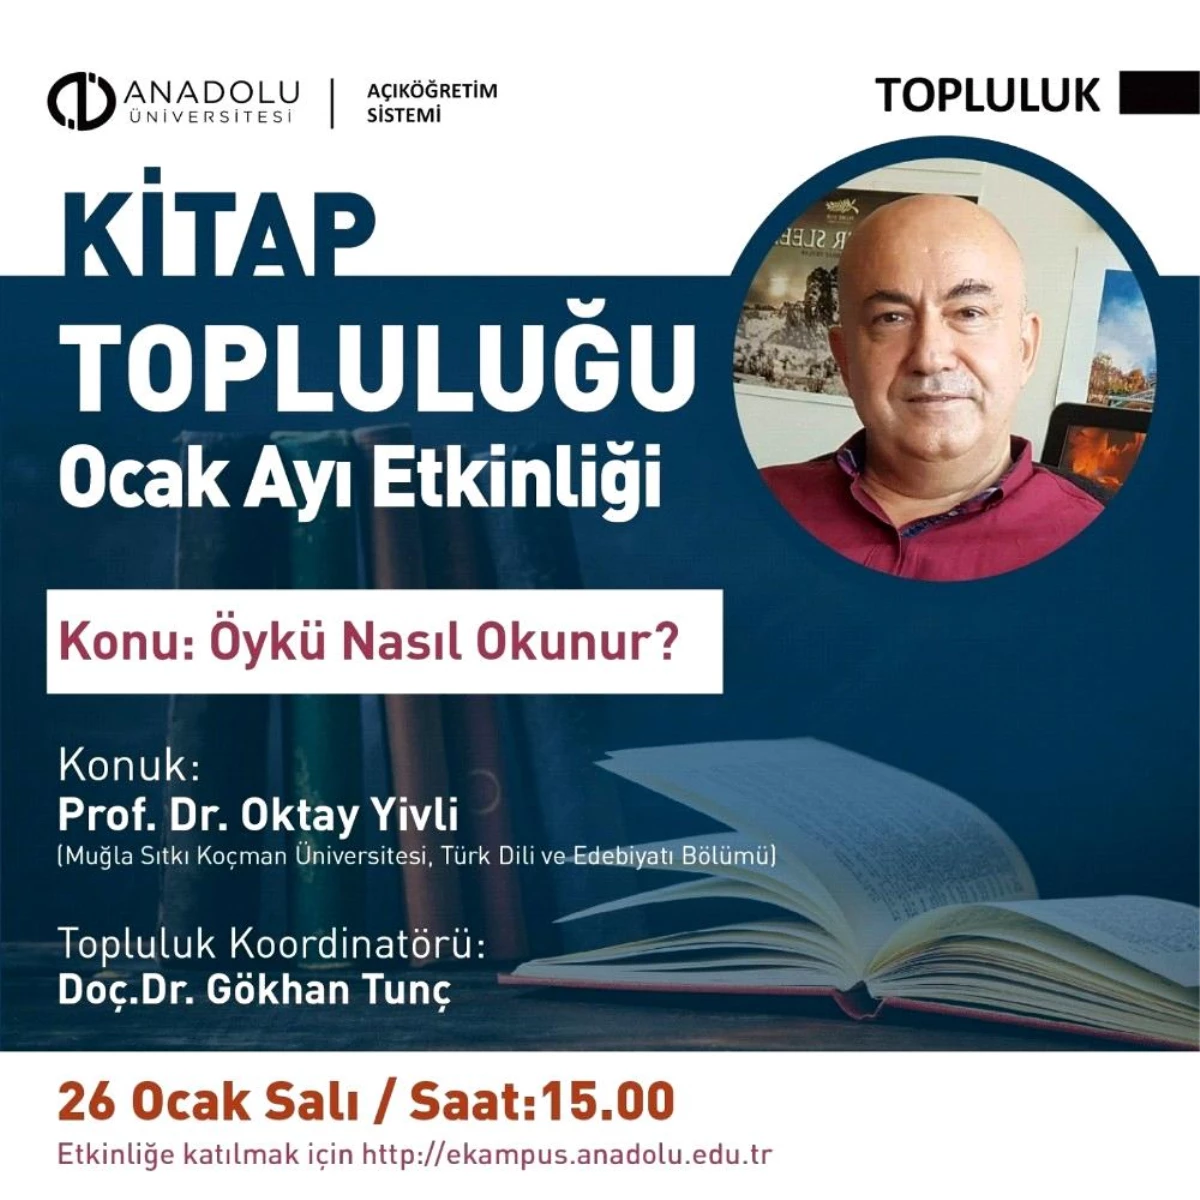 Açıköğretim Sistemi Kitap Topluğu Ocak ayında Prof. Dr. Oktay Yivli\'yi ağırladı